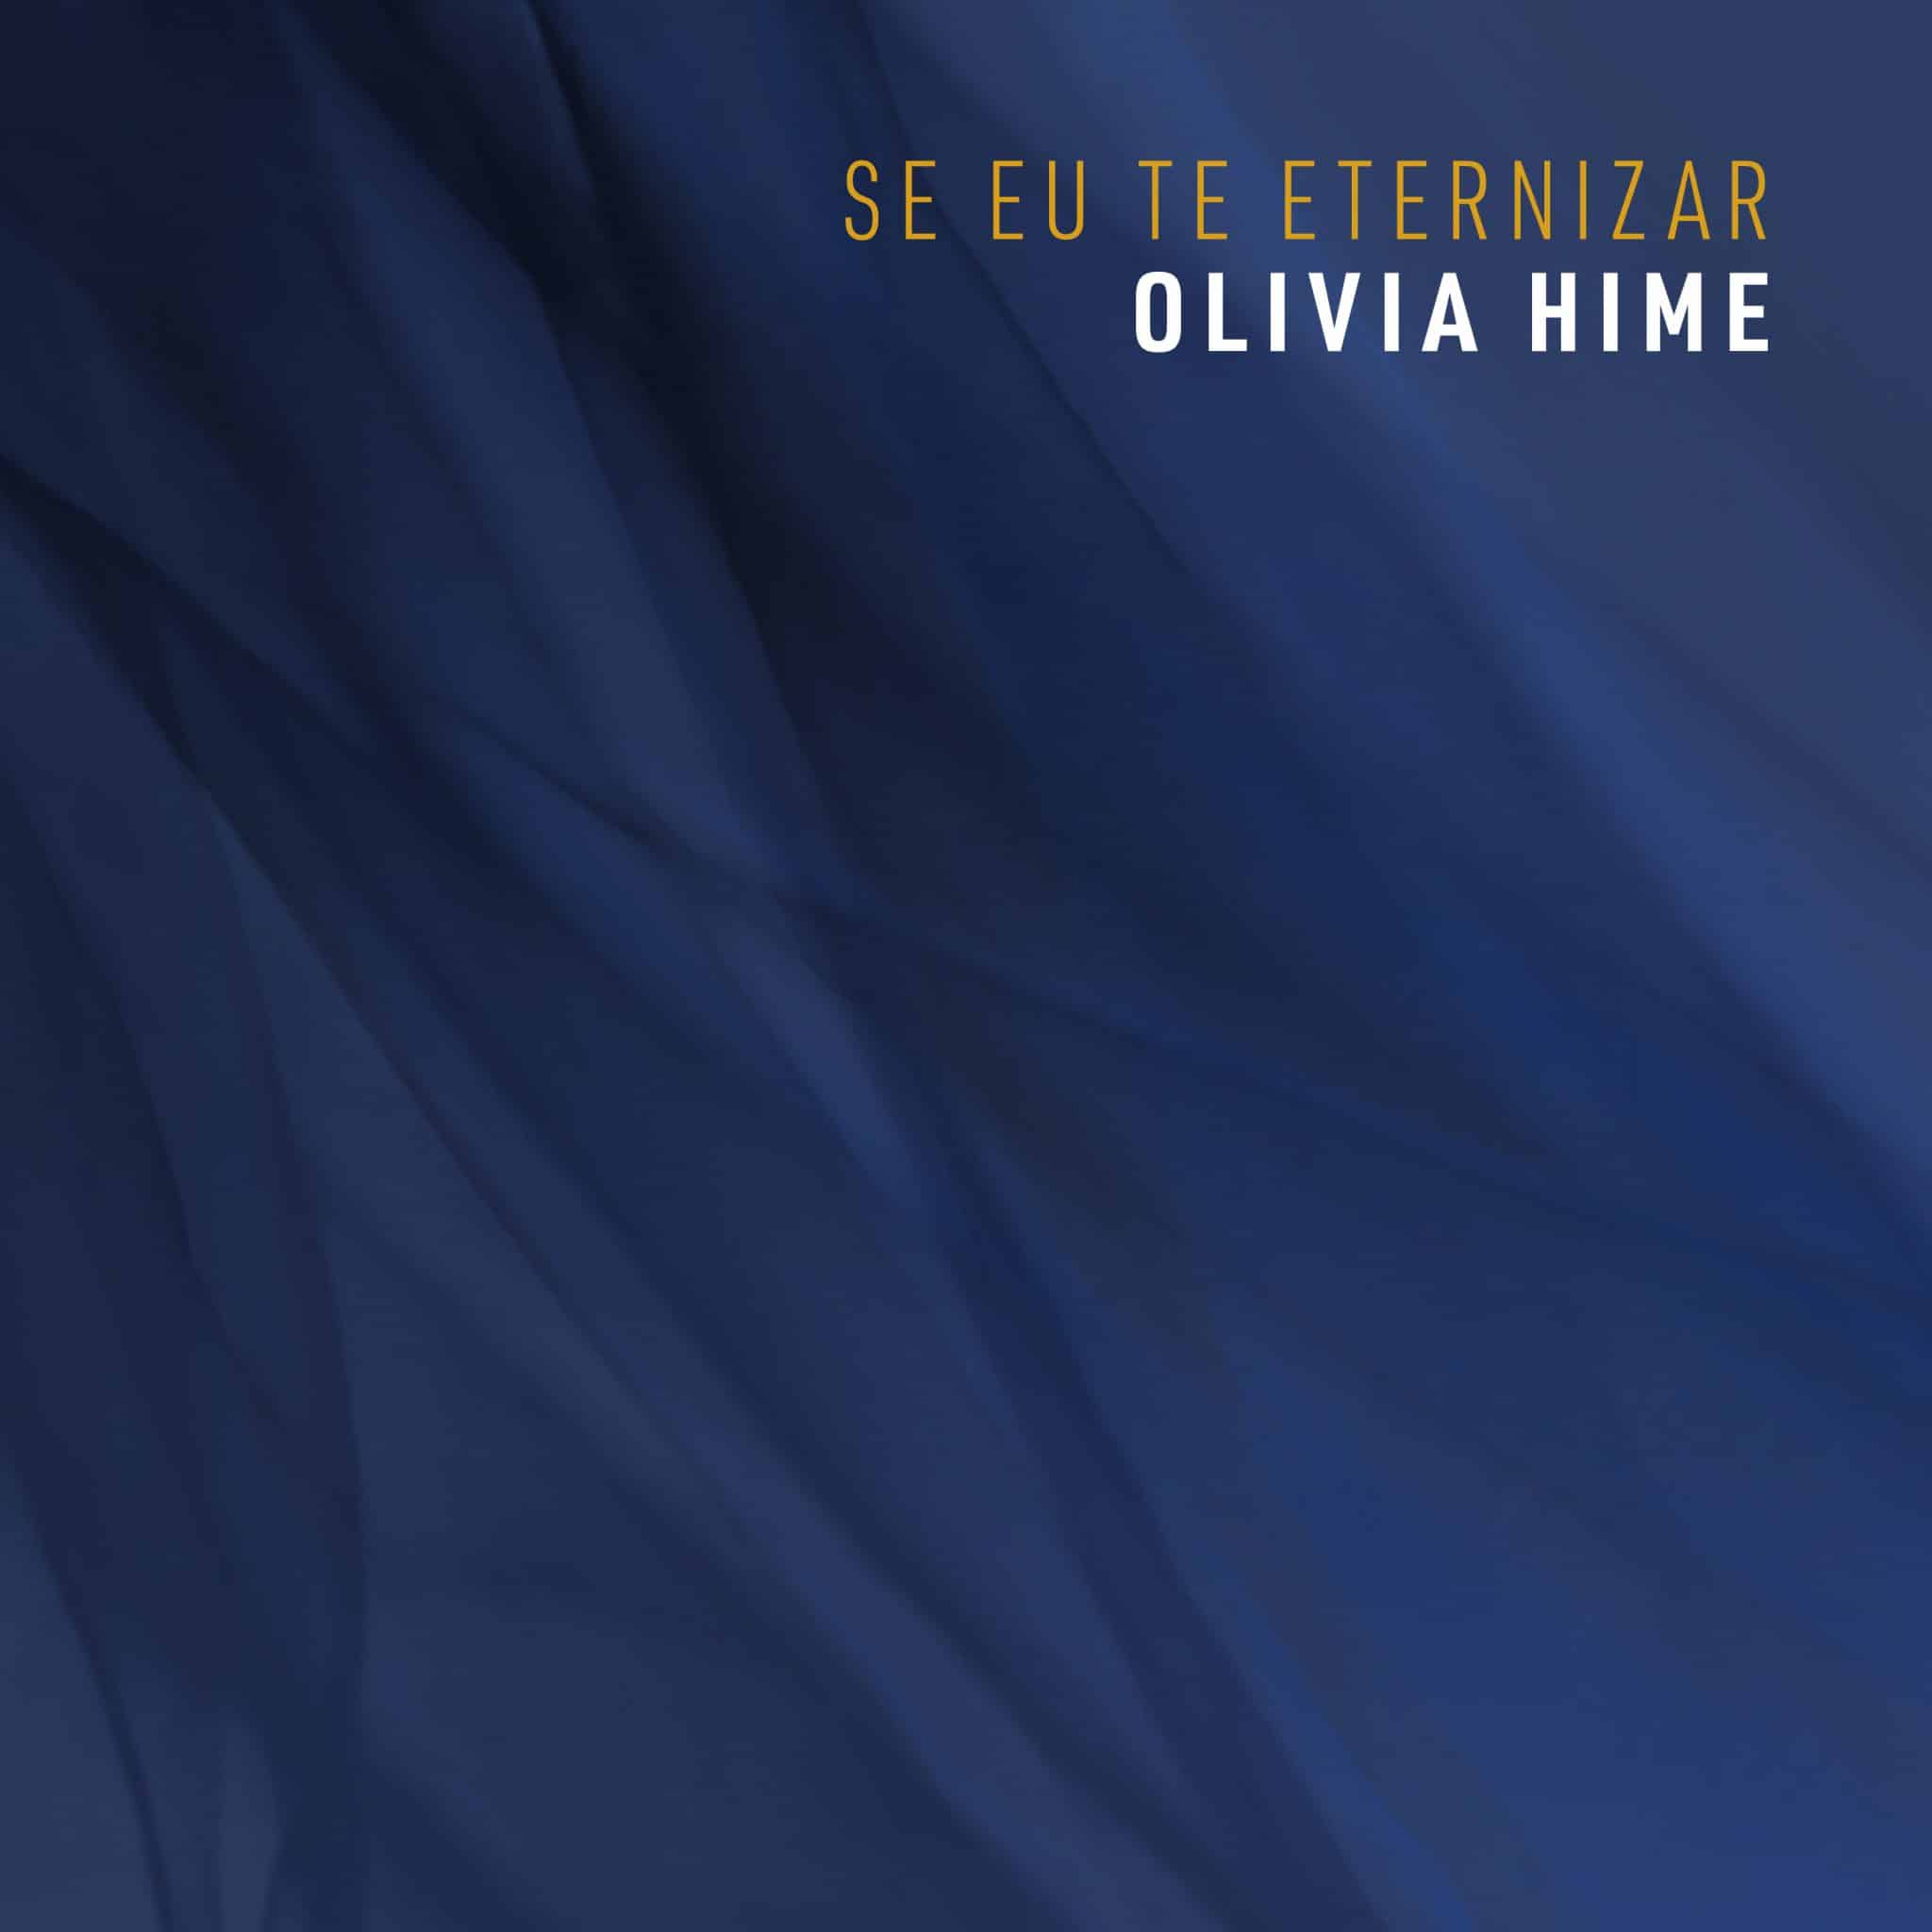 revistaprosaversoearte.com - Selo Sesc lança 16º disco de Olivia Hime: 'Se eu te eternizar'